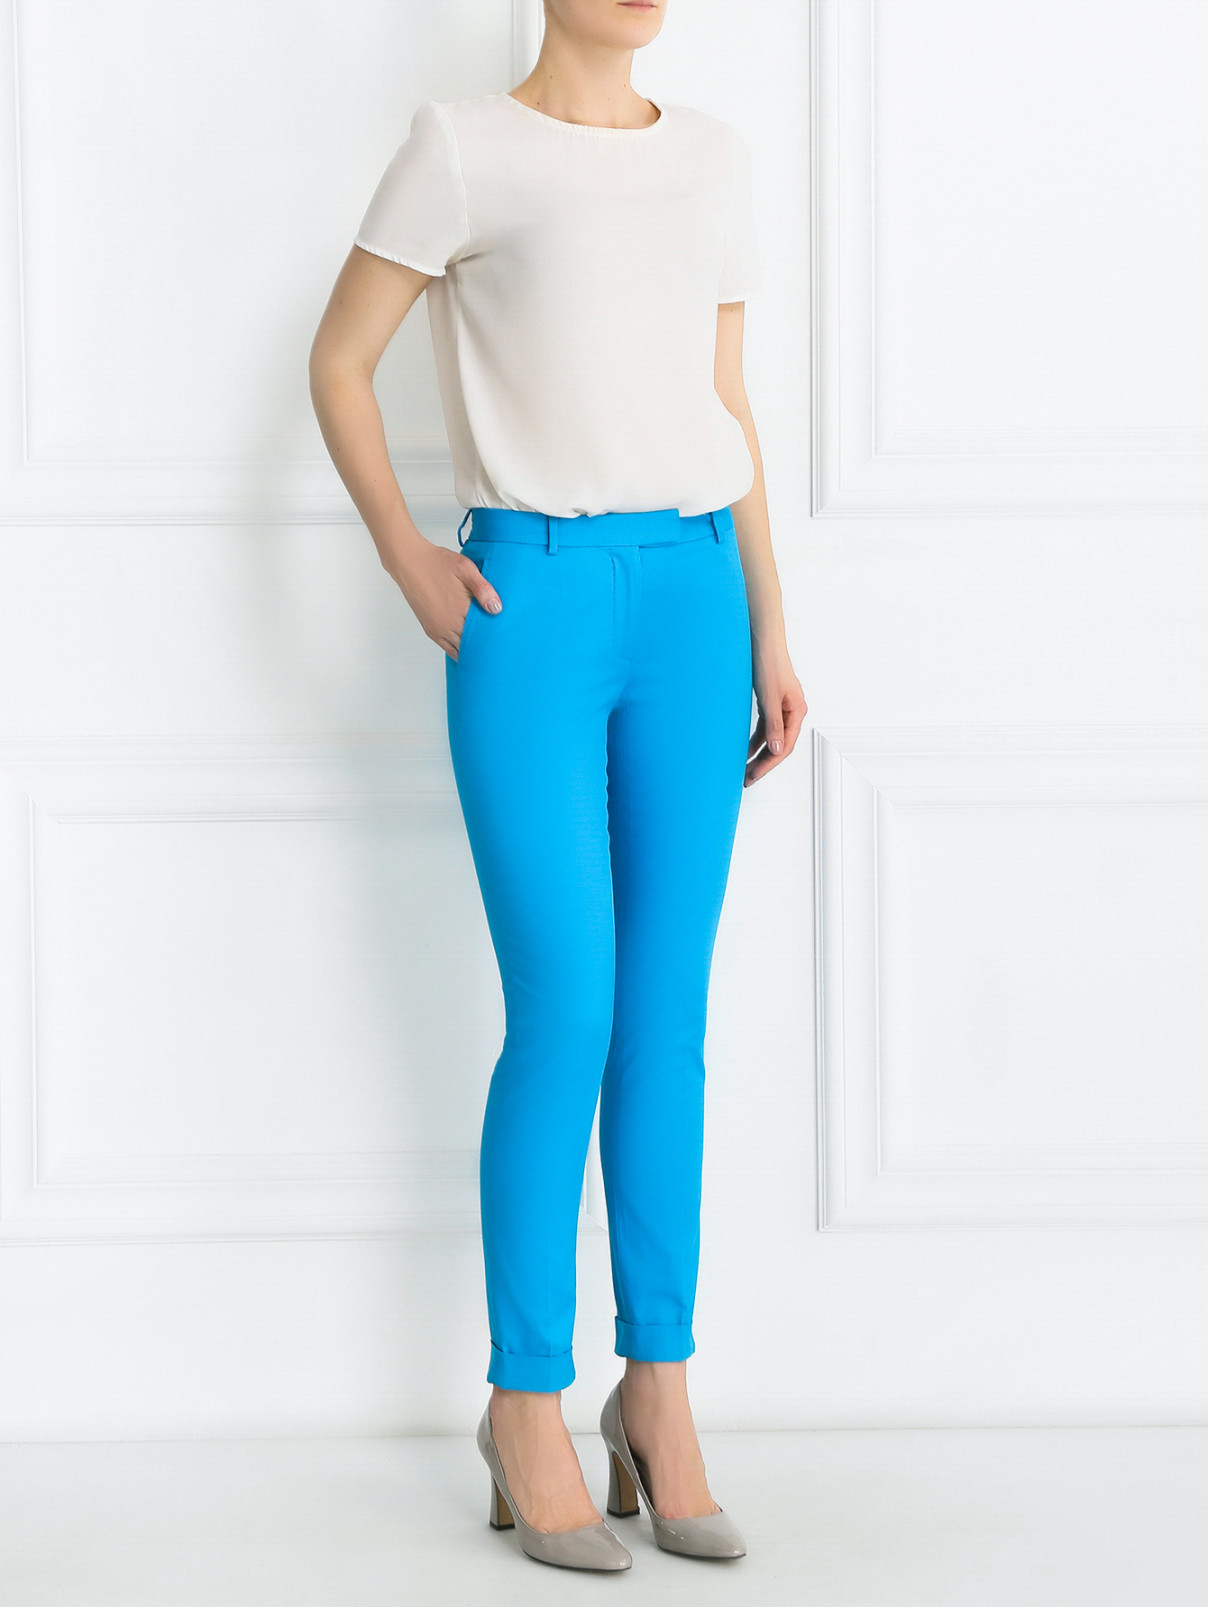 Укороченные брюки из хлопка с карманами Jean Paul Gaultier  –  Модель Общий вид  – Цвет:  Синий